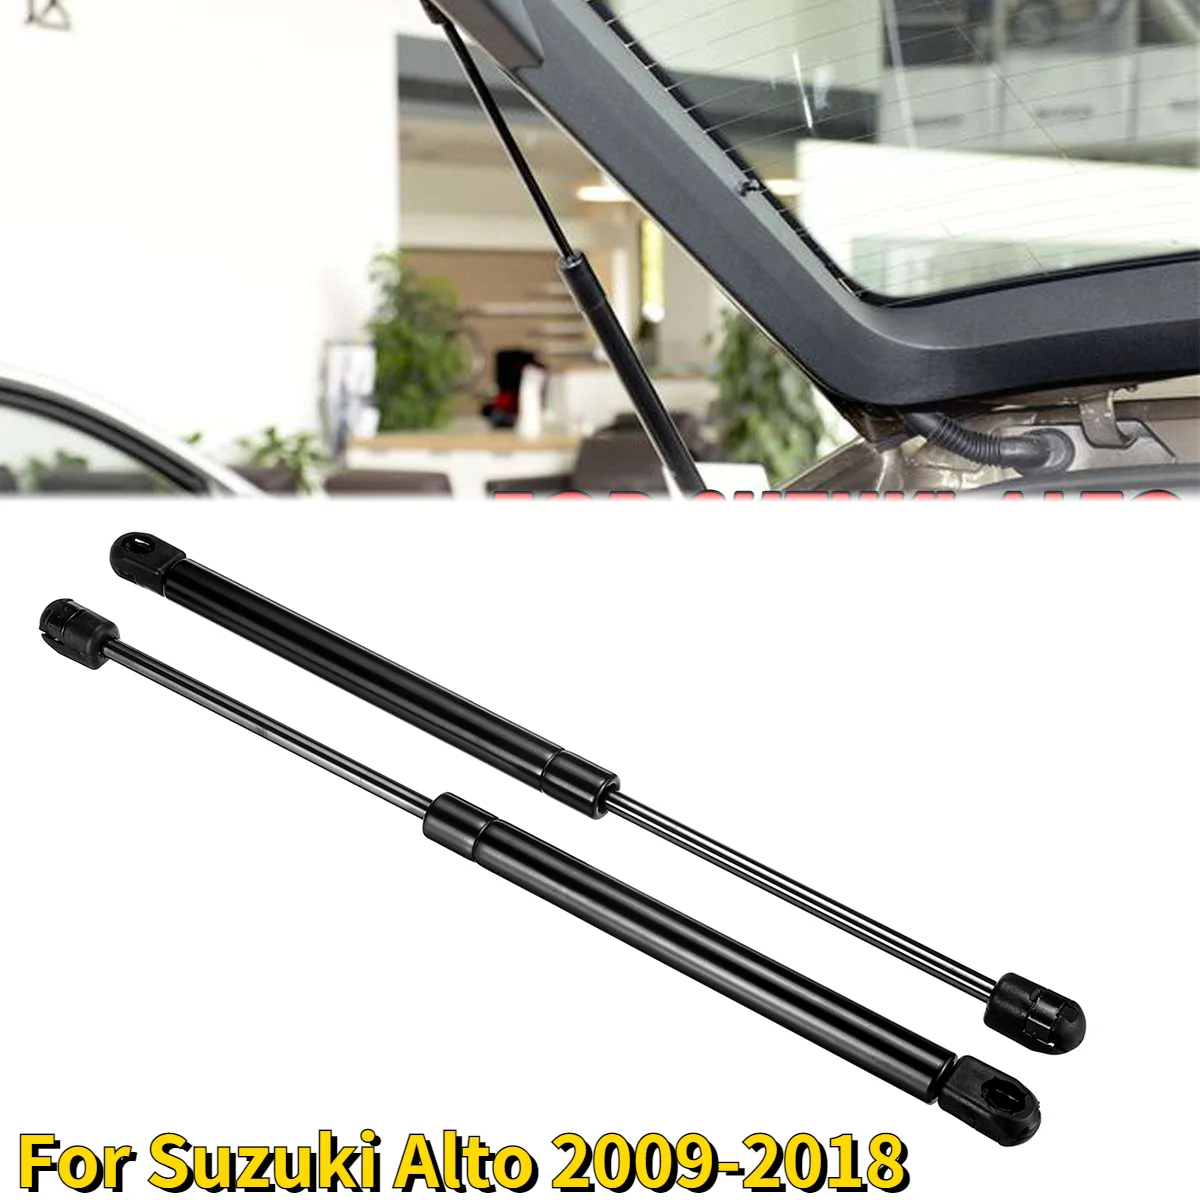 

2 шт. для Suzuki Alto 2009-2018 подъемник заднего багажника, поддерживающие газовые стойки, пружинный опорный стержень, амортизатор, автомобильные ак...